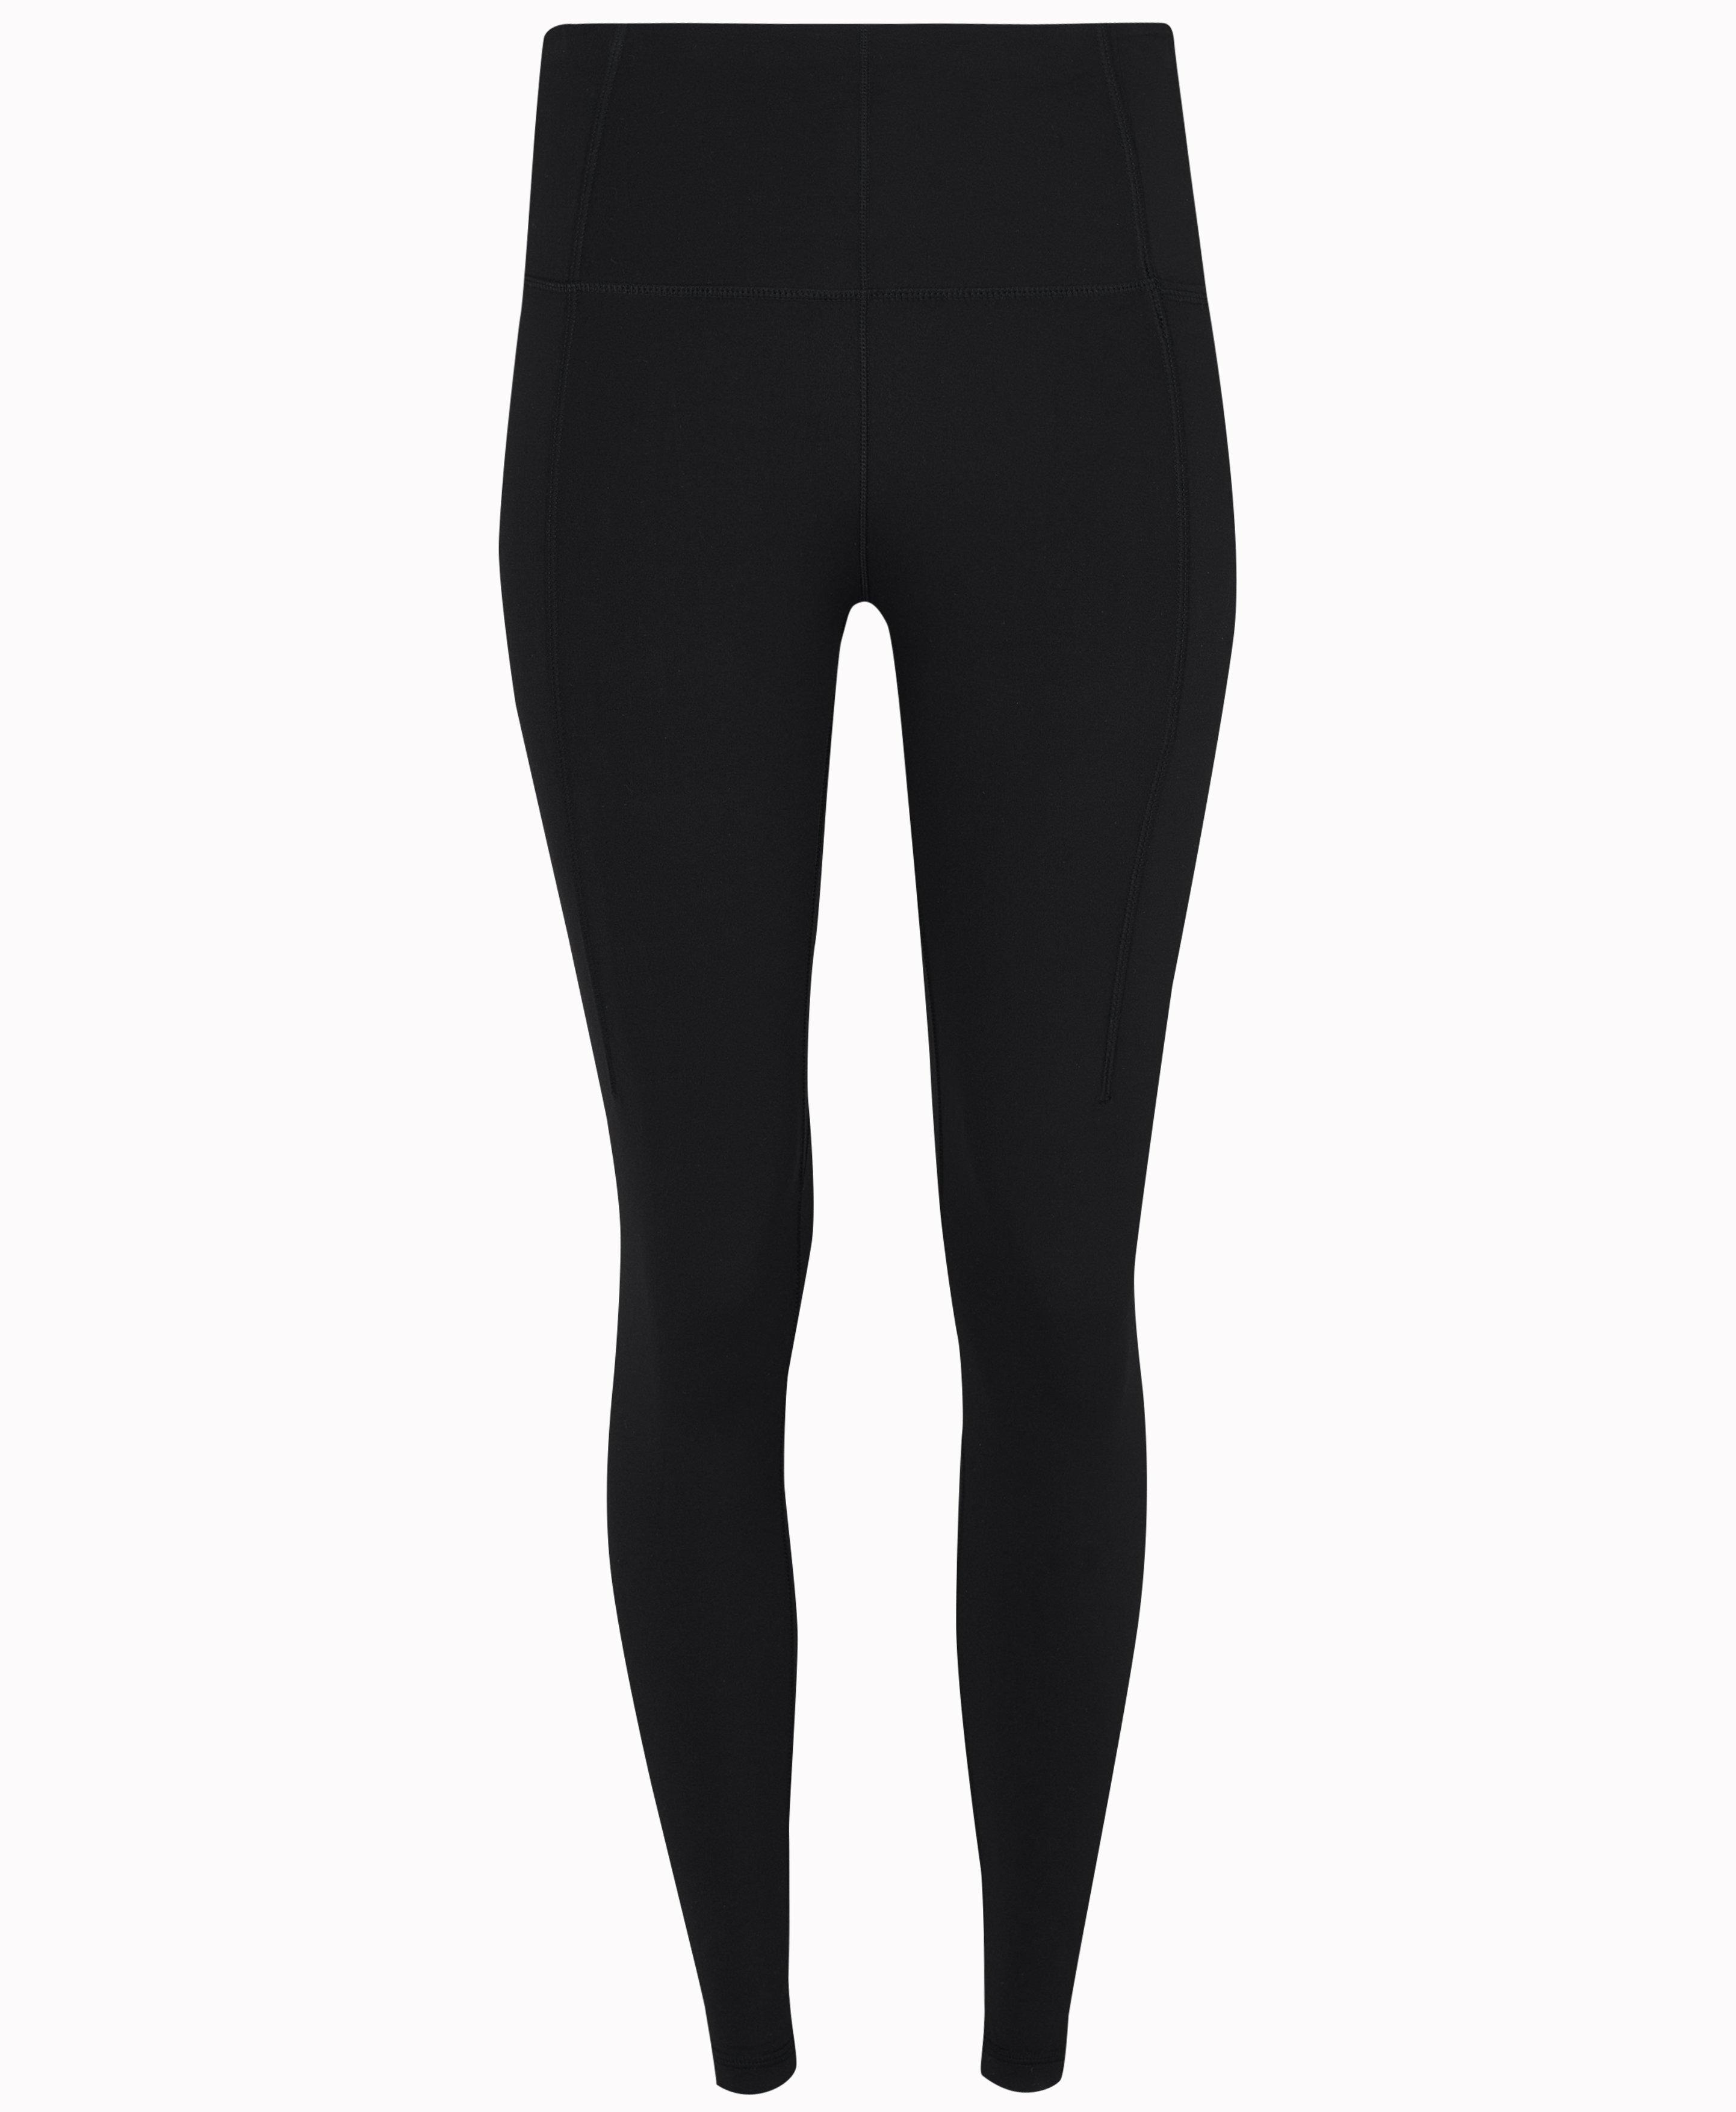 Super Soft 7/8 Yoga Leggings - Black, Women's Leggings